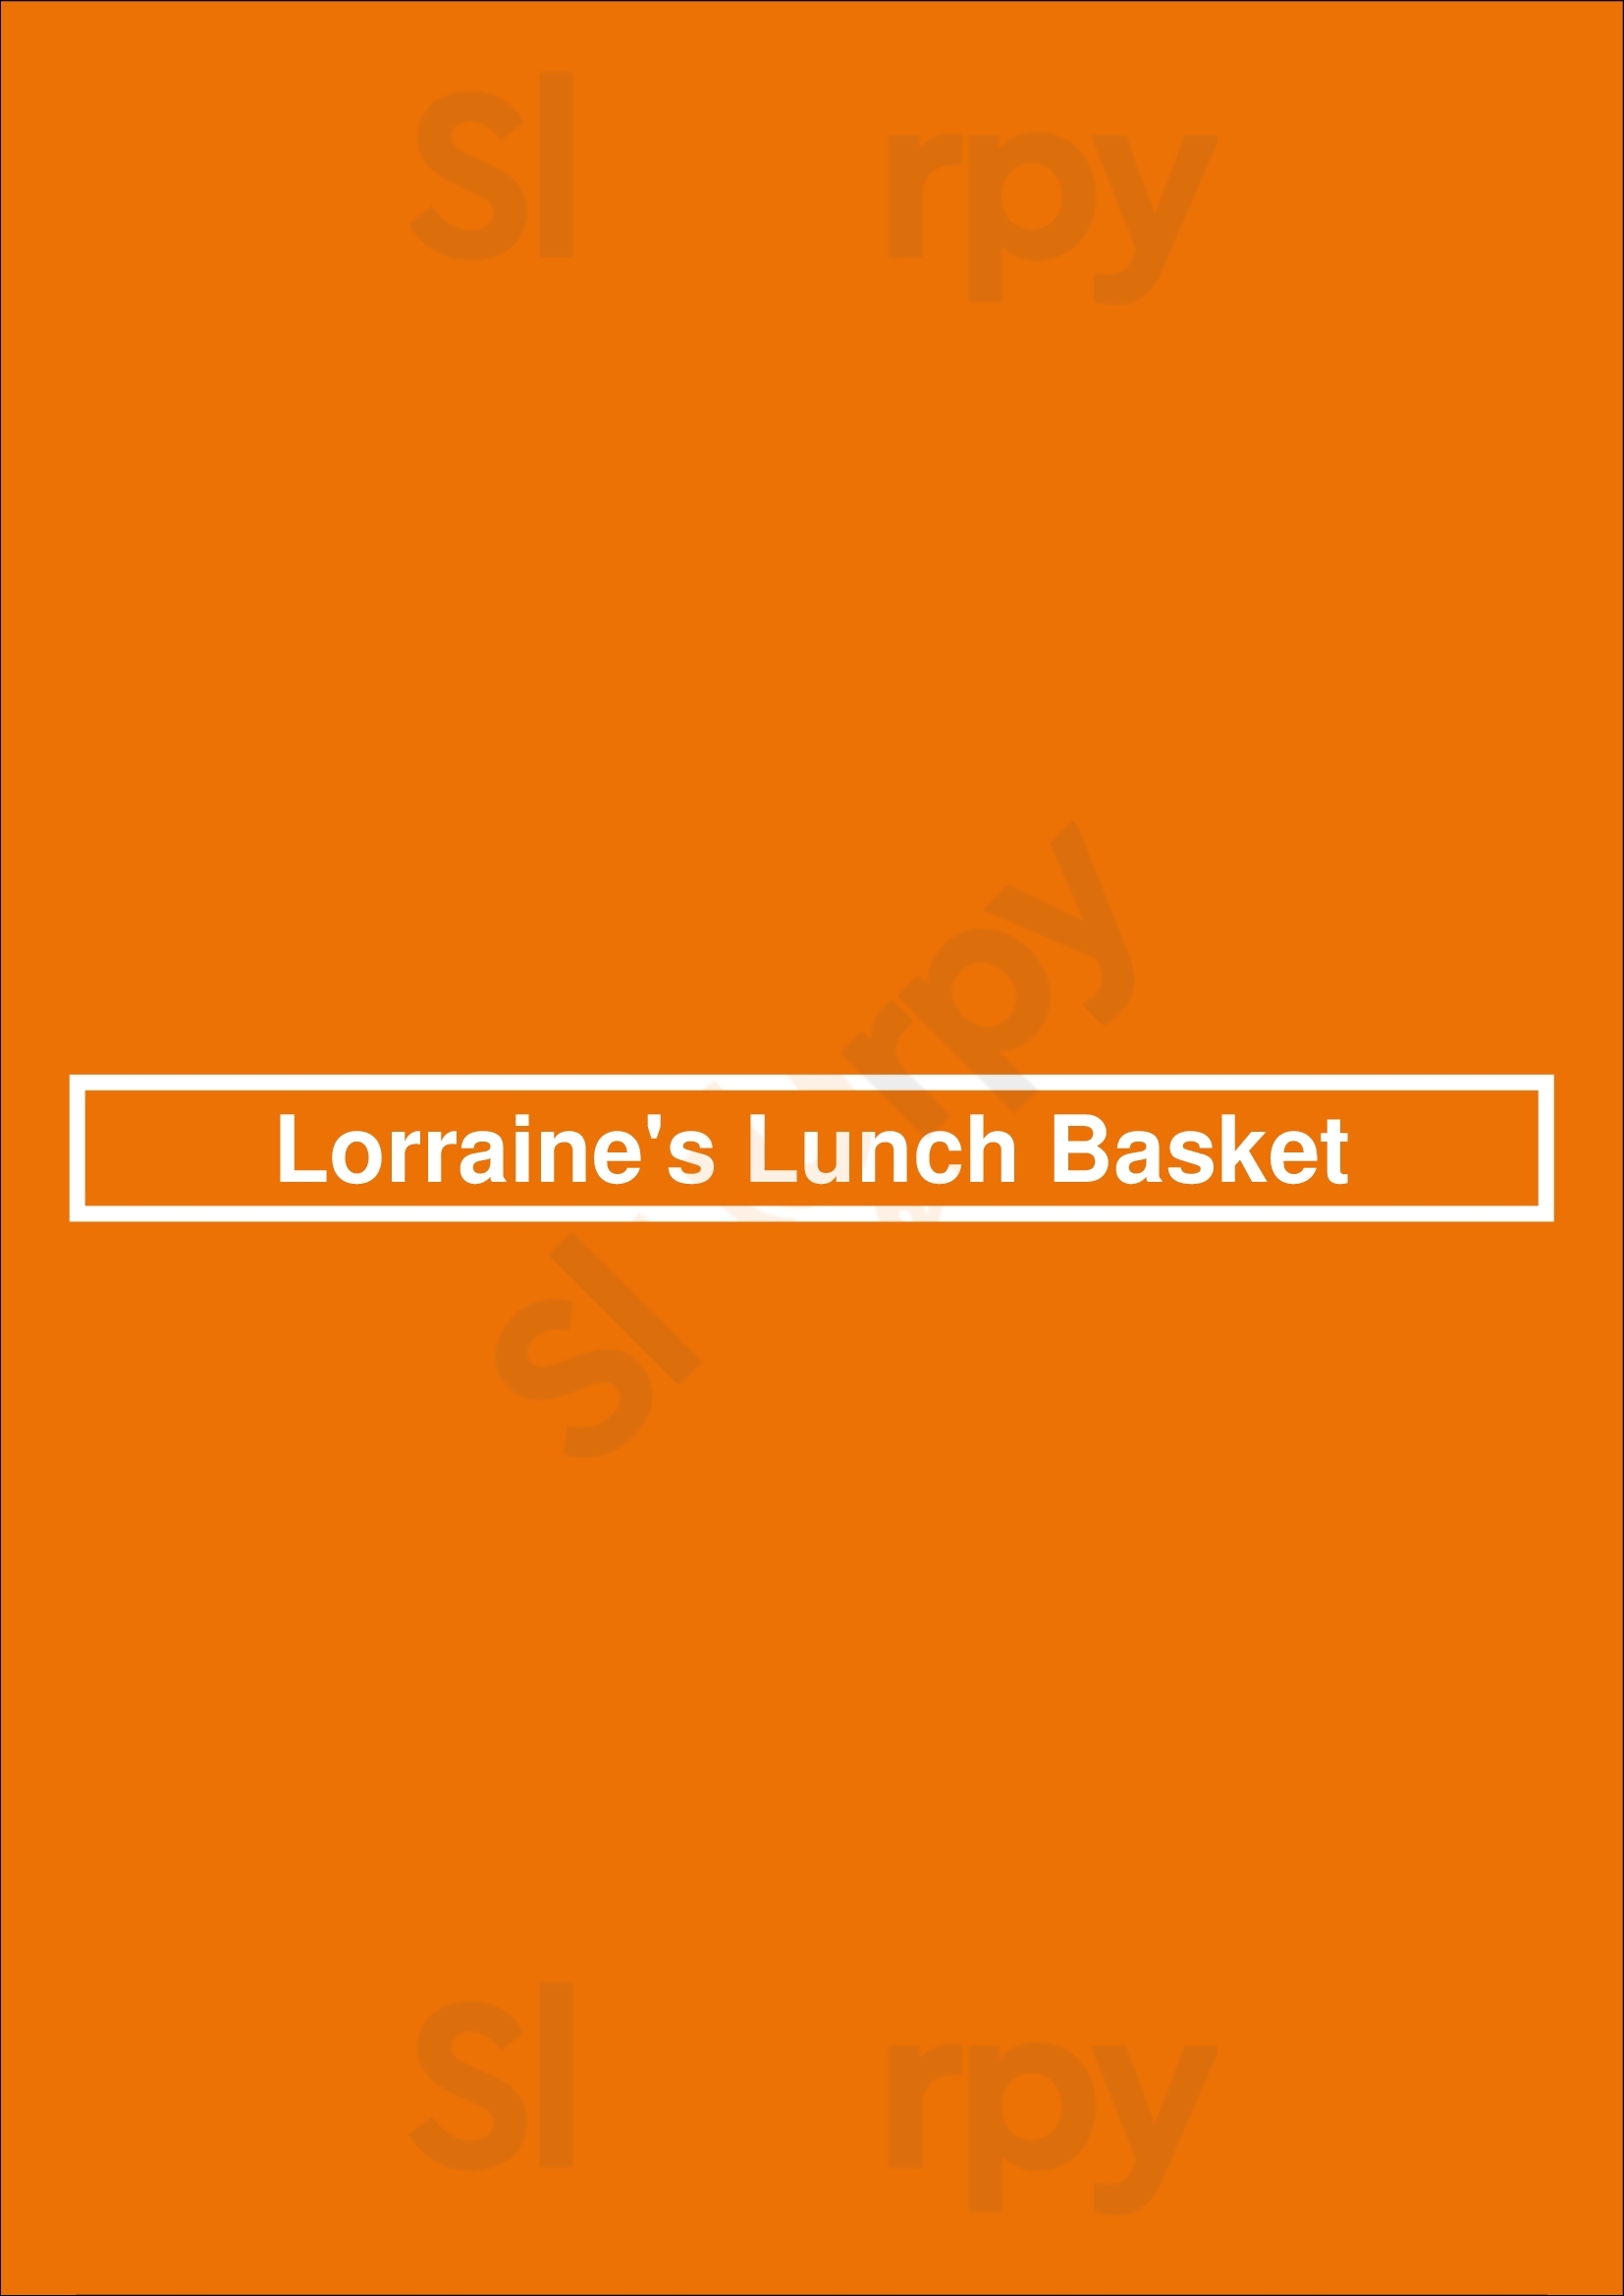 Lorraine's Lunch Basket Rochester Menu - 1